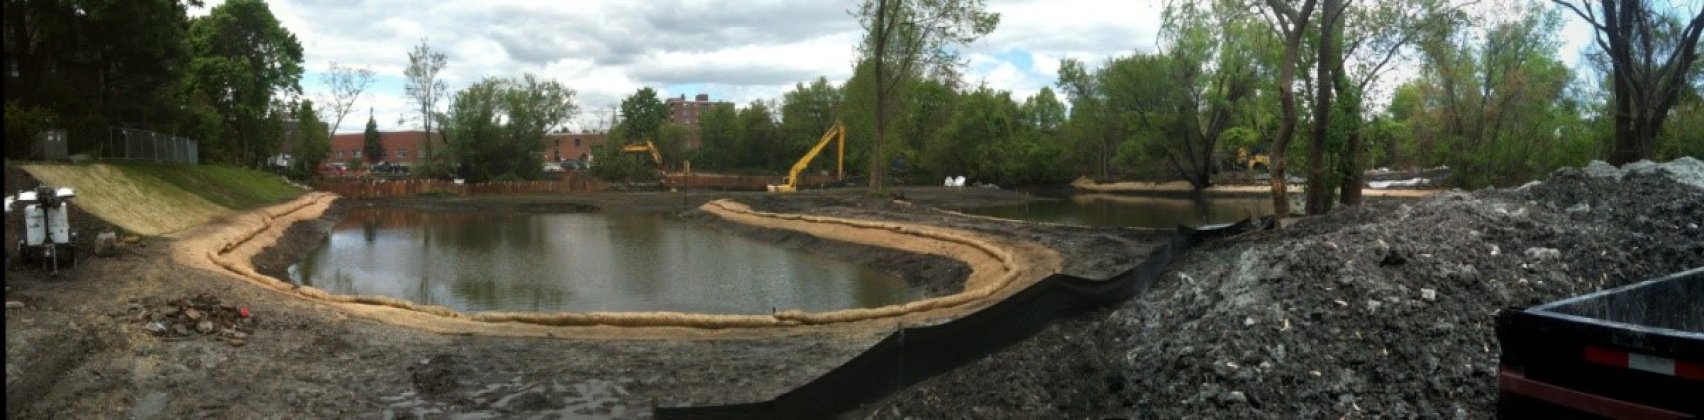 Blair Pond Restoration